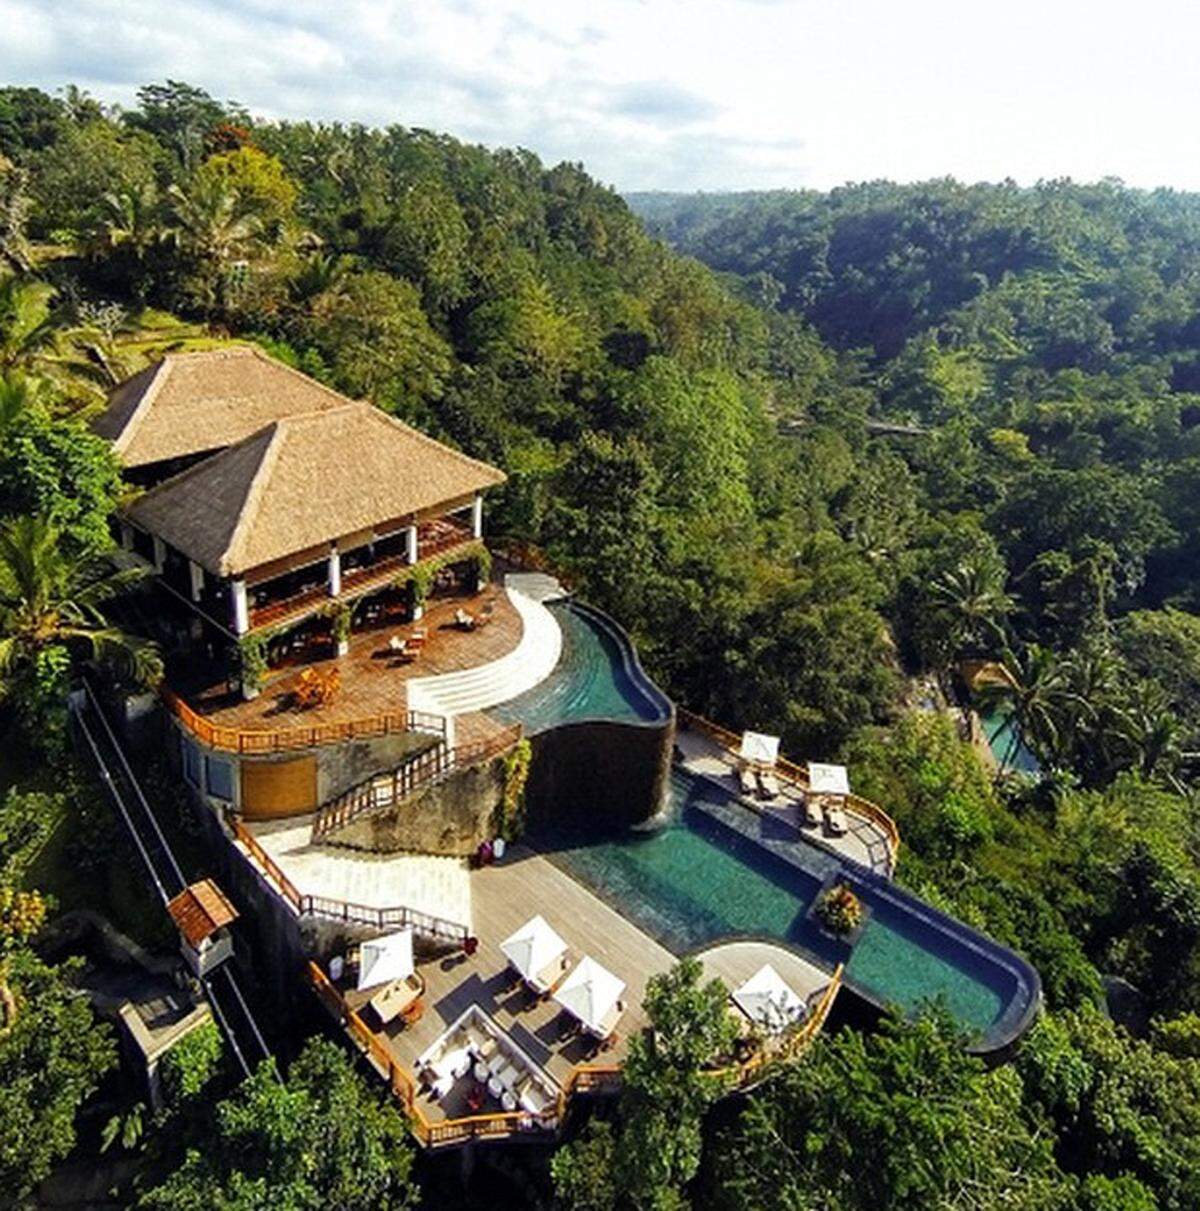 Ebenfalls sehr fotogen sind die Infinity-Pools mitten im indonesischen Urwald.